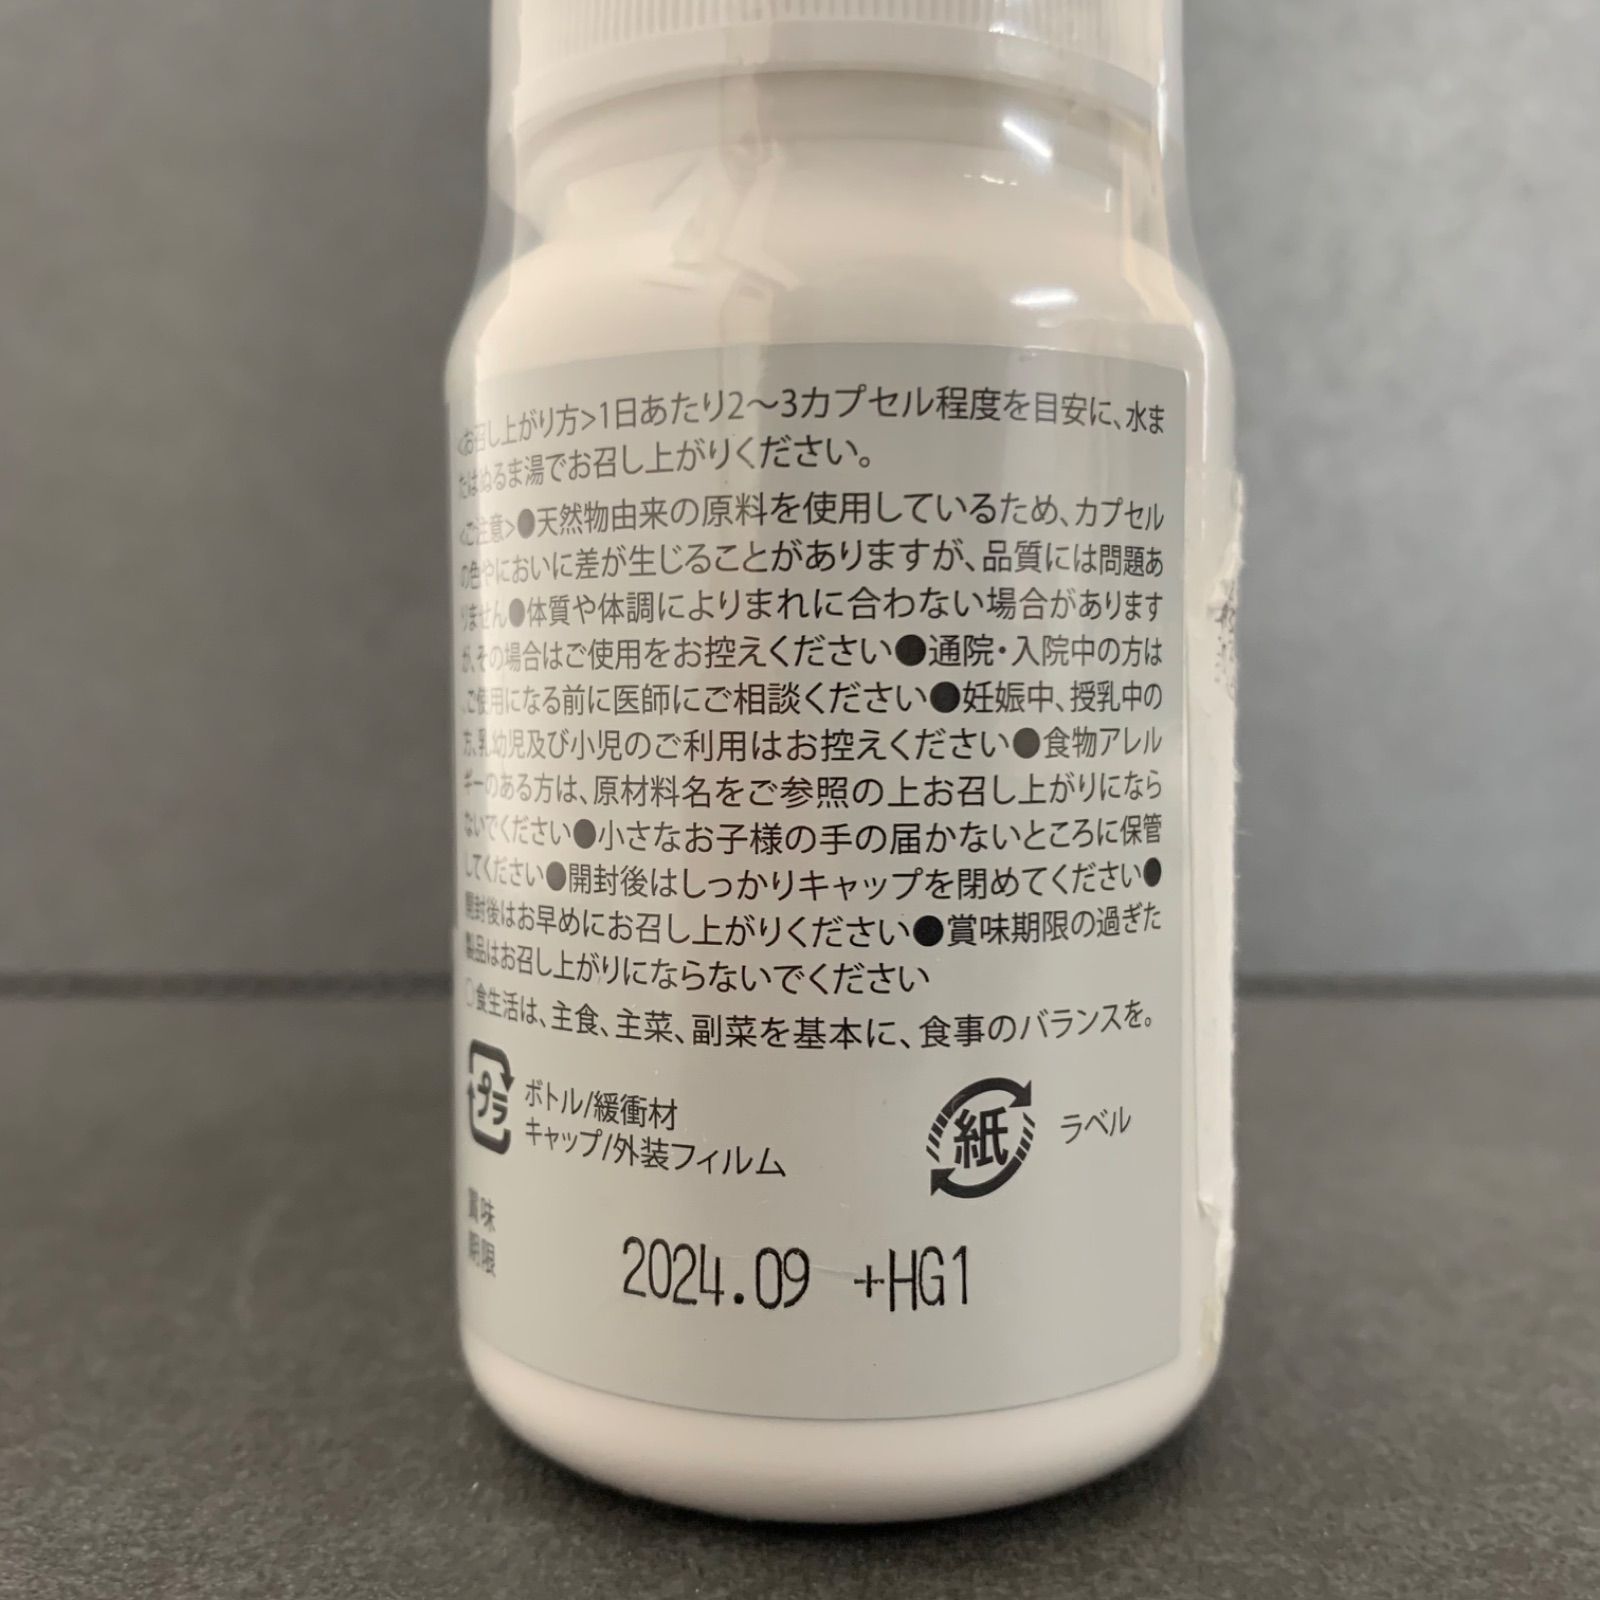 ビクトリーロード NMN 18000 - SENPEMO cosmetics - メルカリ